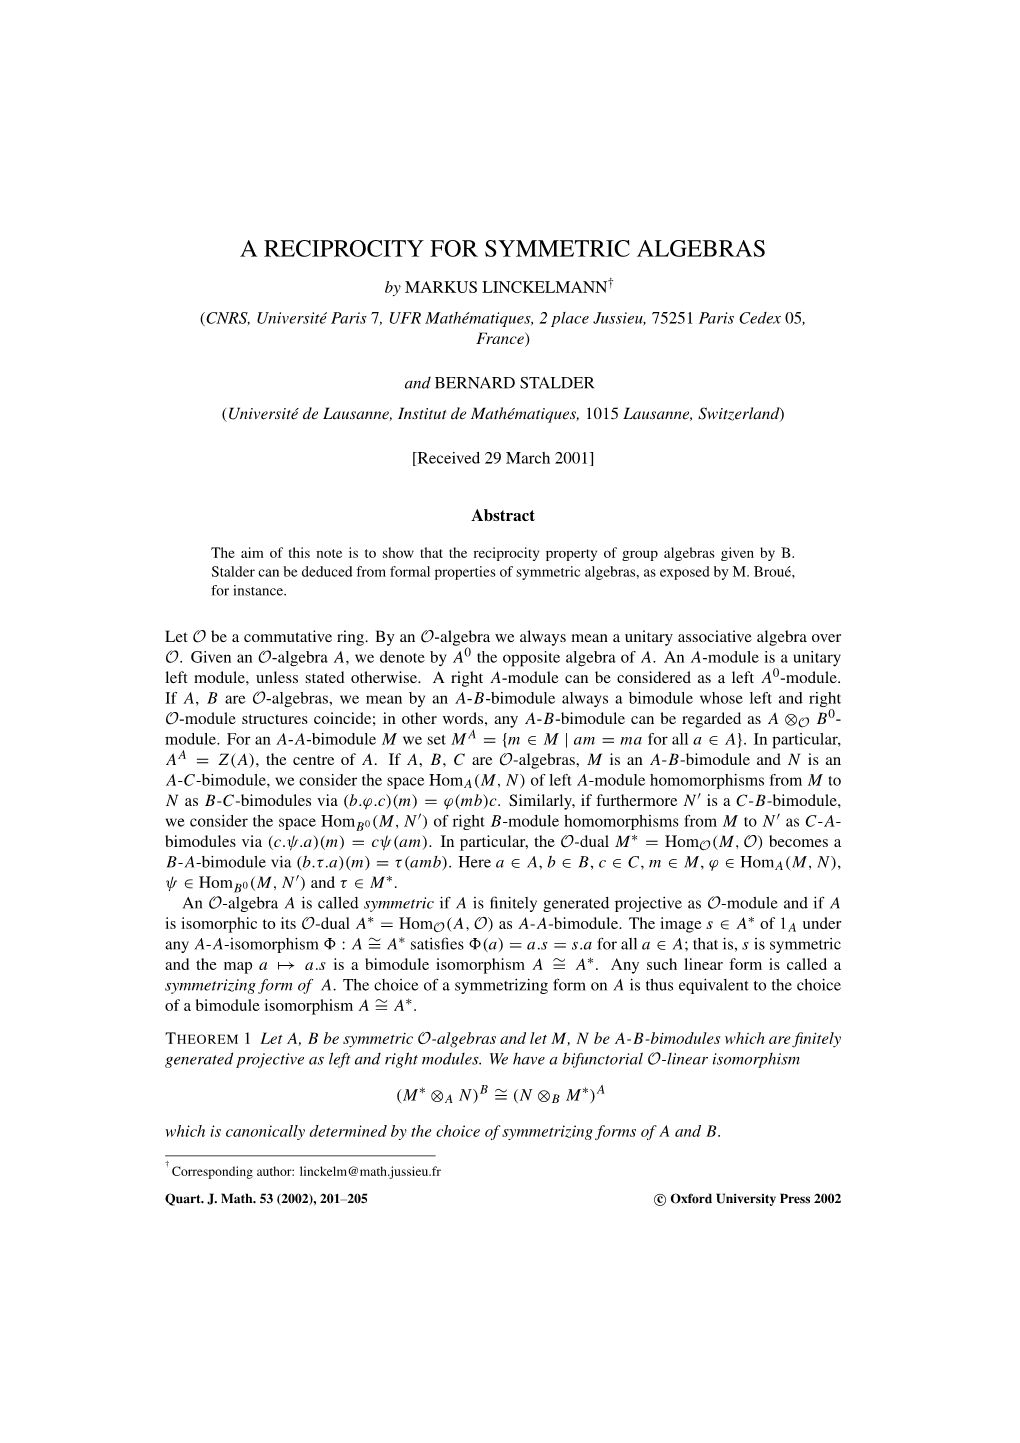 A Reciprocity for Symmetric Algebras